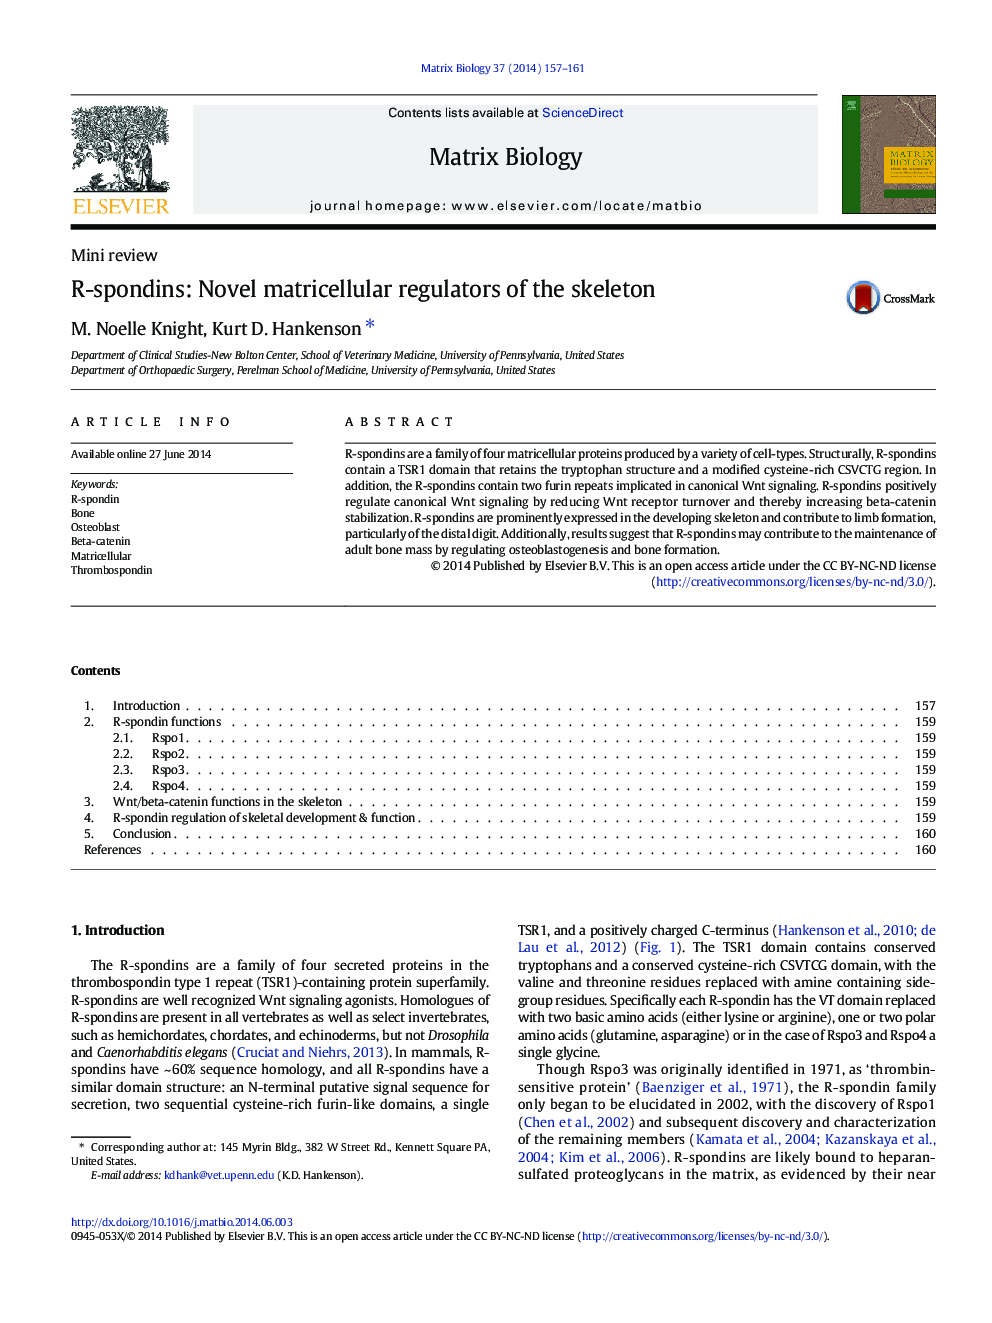 R-spondins: Novel matricellular regulators of the skeleton